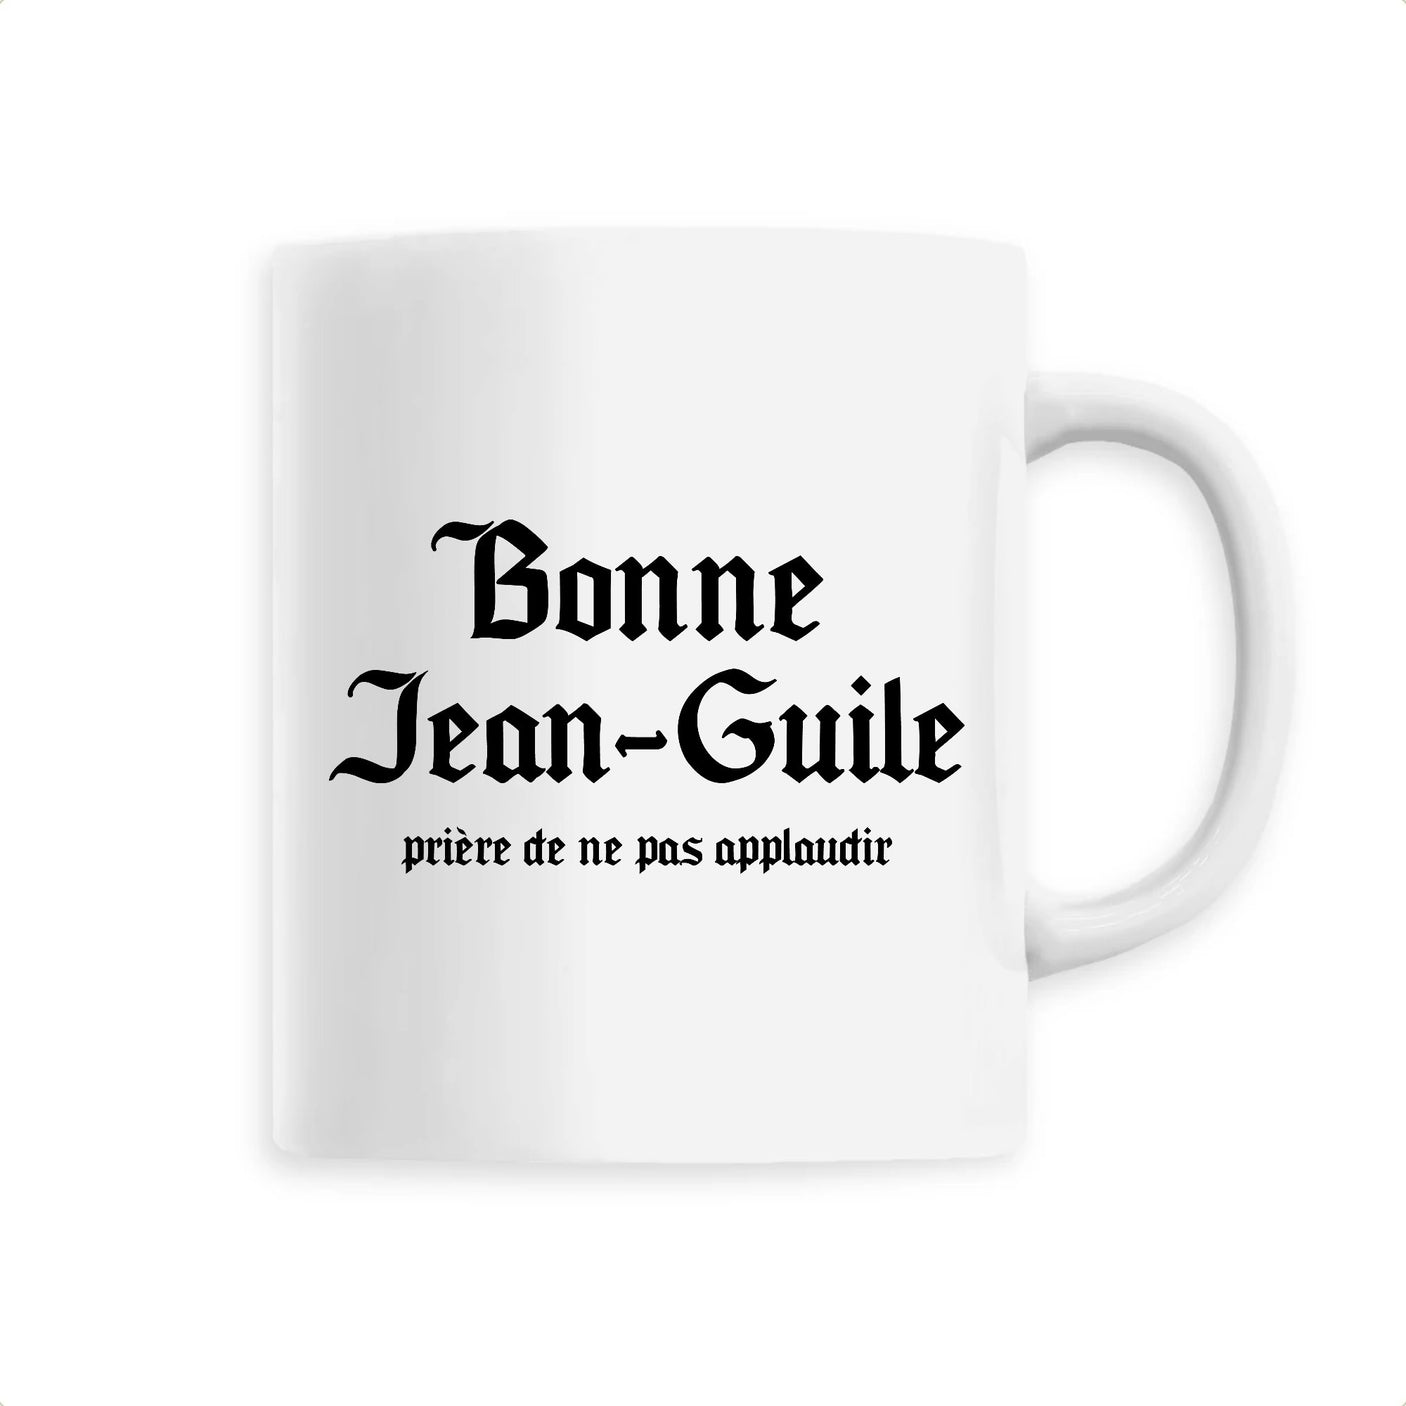 Mug Jean-Guile 